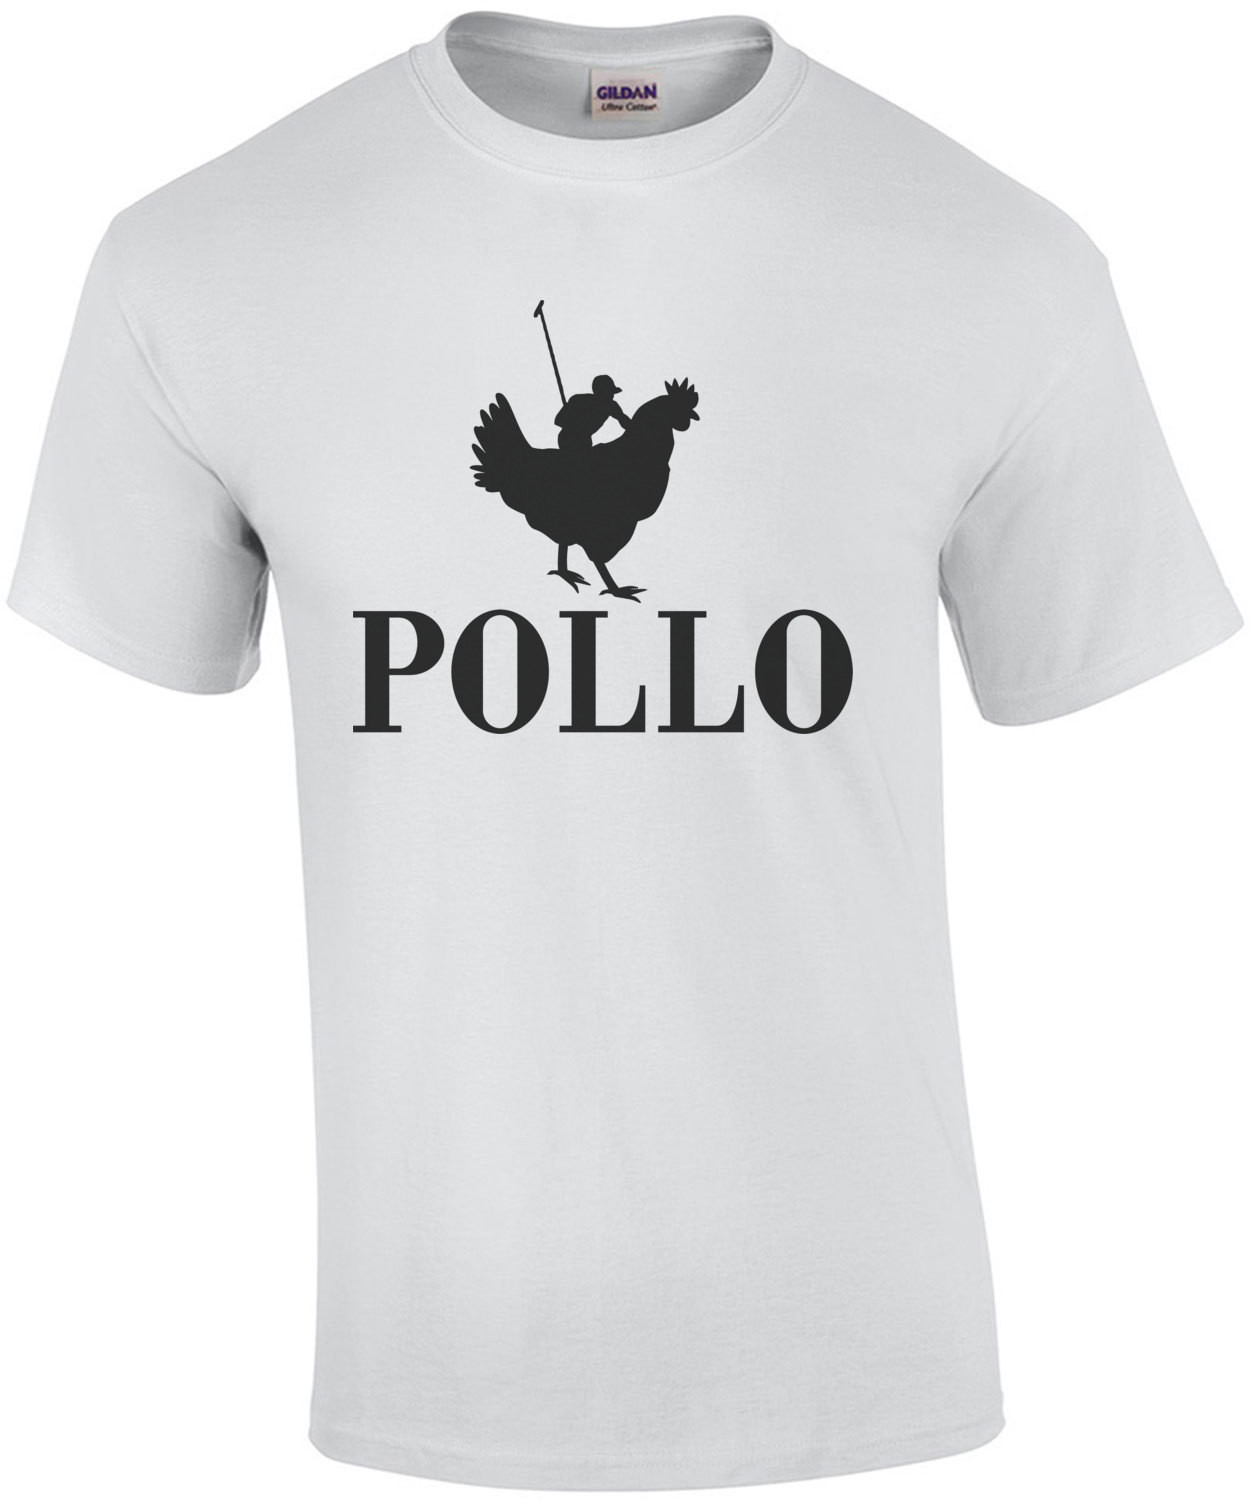 Pollo Polo Parody